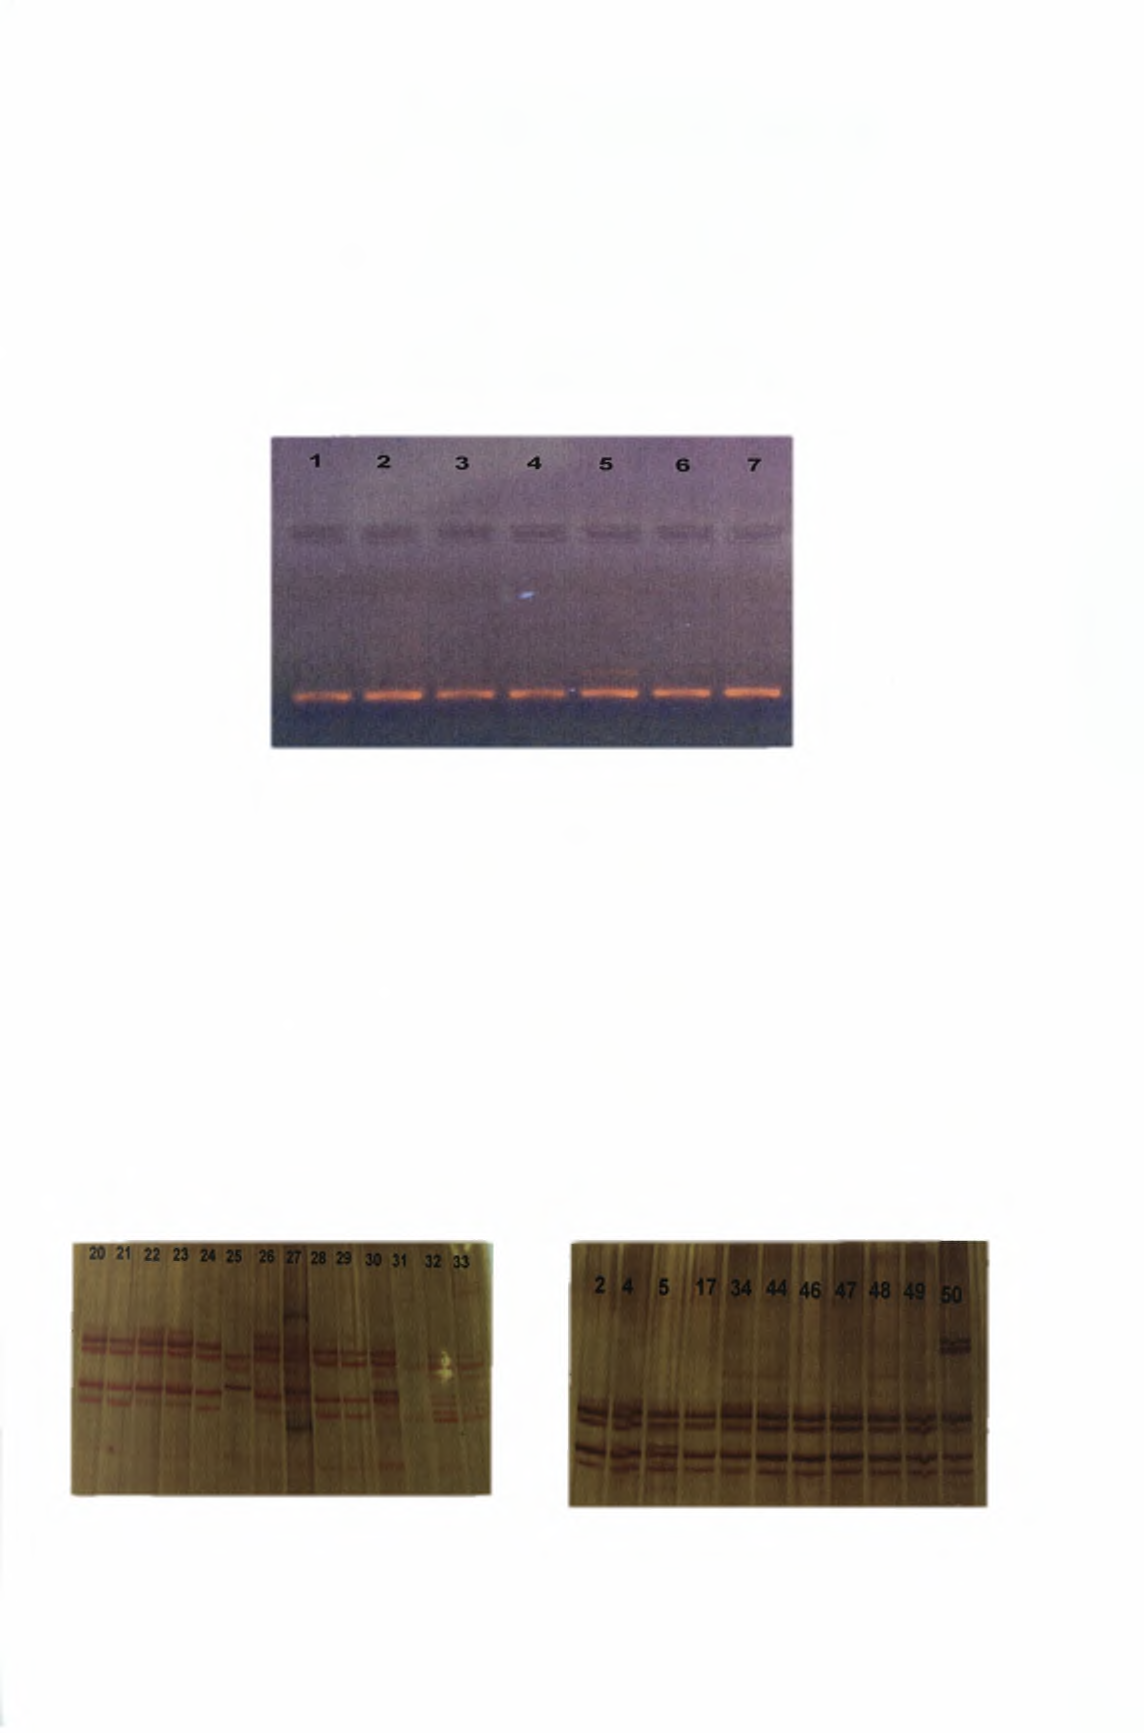 Στην συνέχεια με την τεχνική της PCR πολλαπλασιάσαμε τμήμα του γονιδίου 16s RNA και για τα 50 δείγματα.